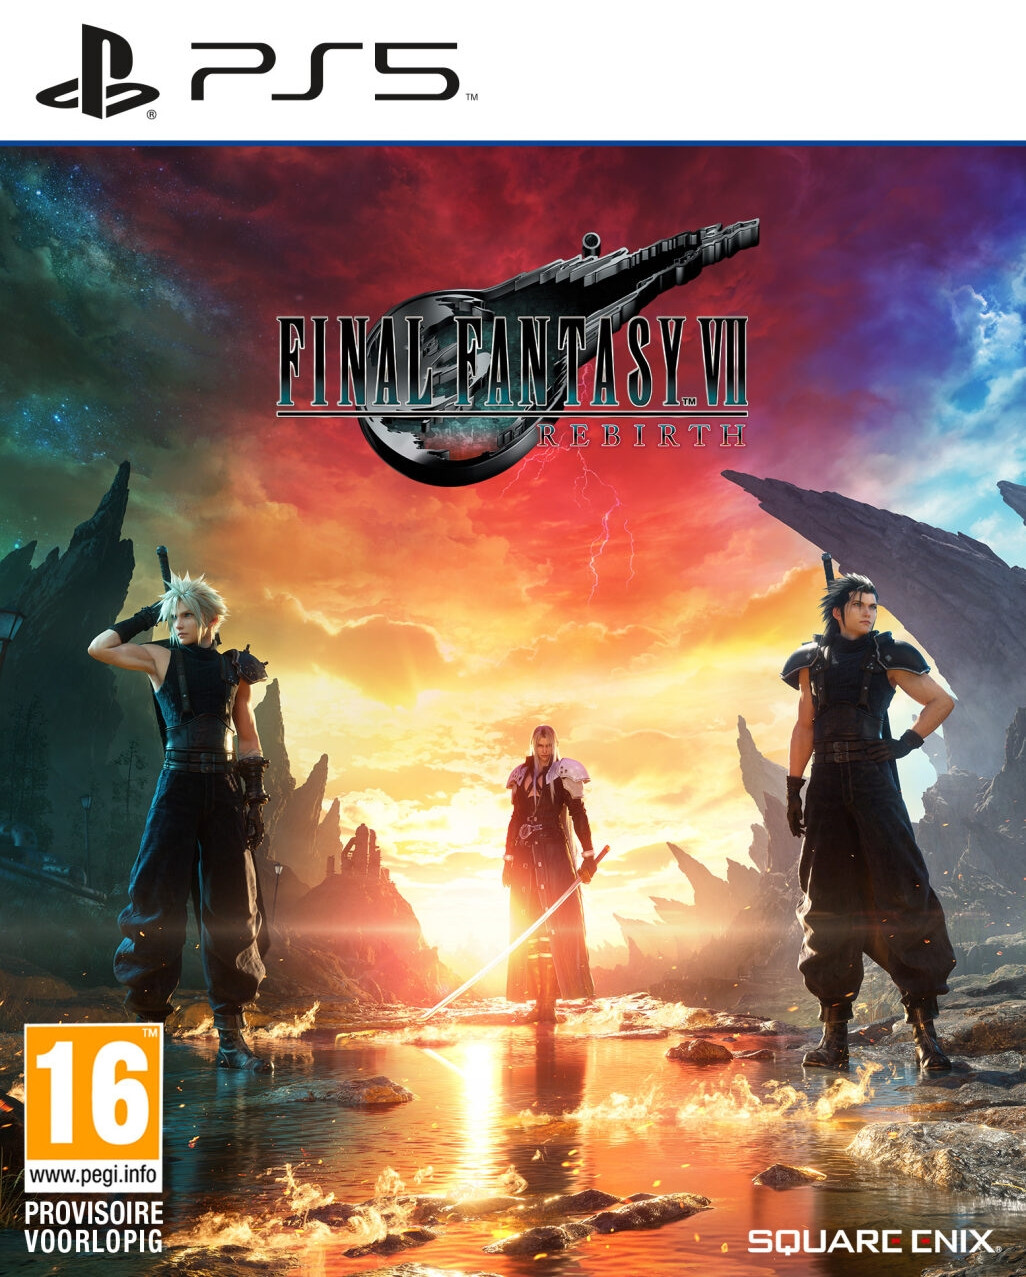 Final Fantasy VII Rebirth (PS5), Square Enix